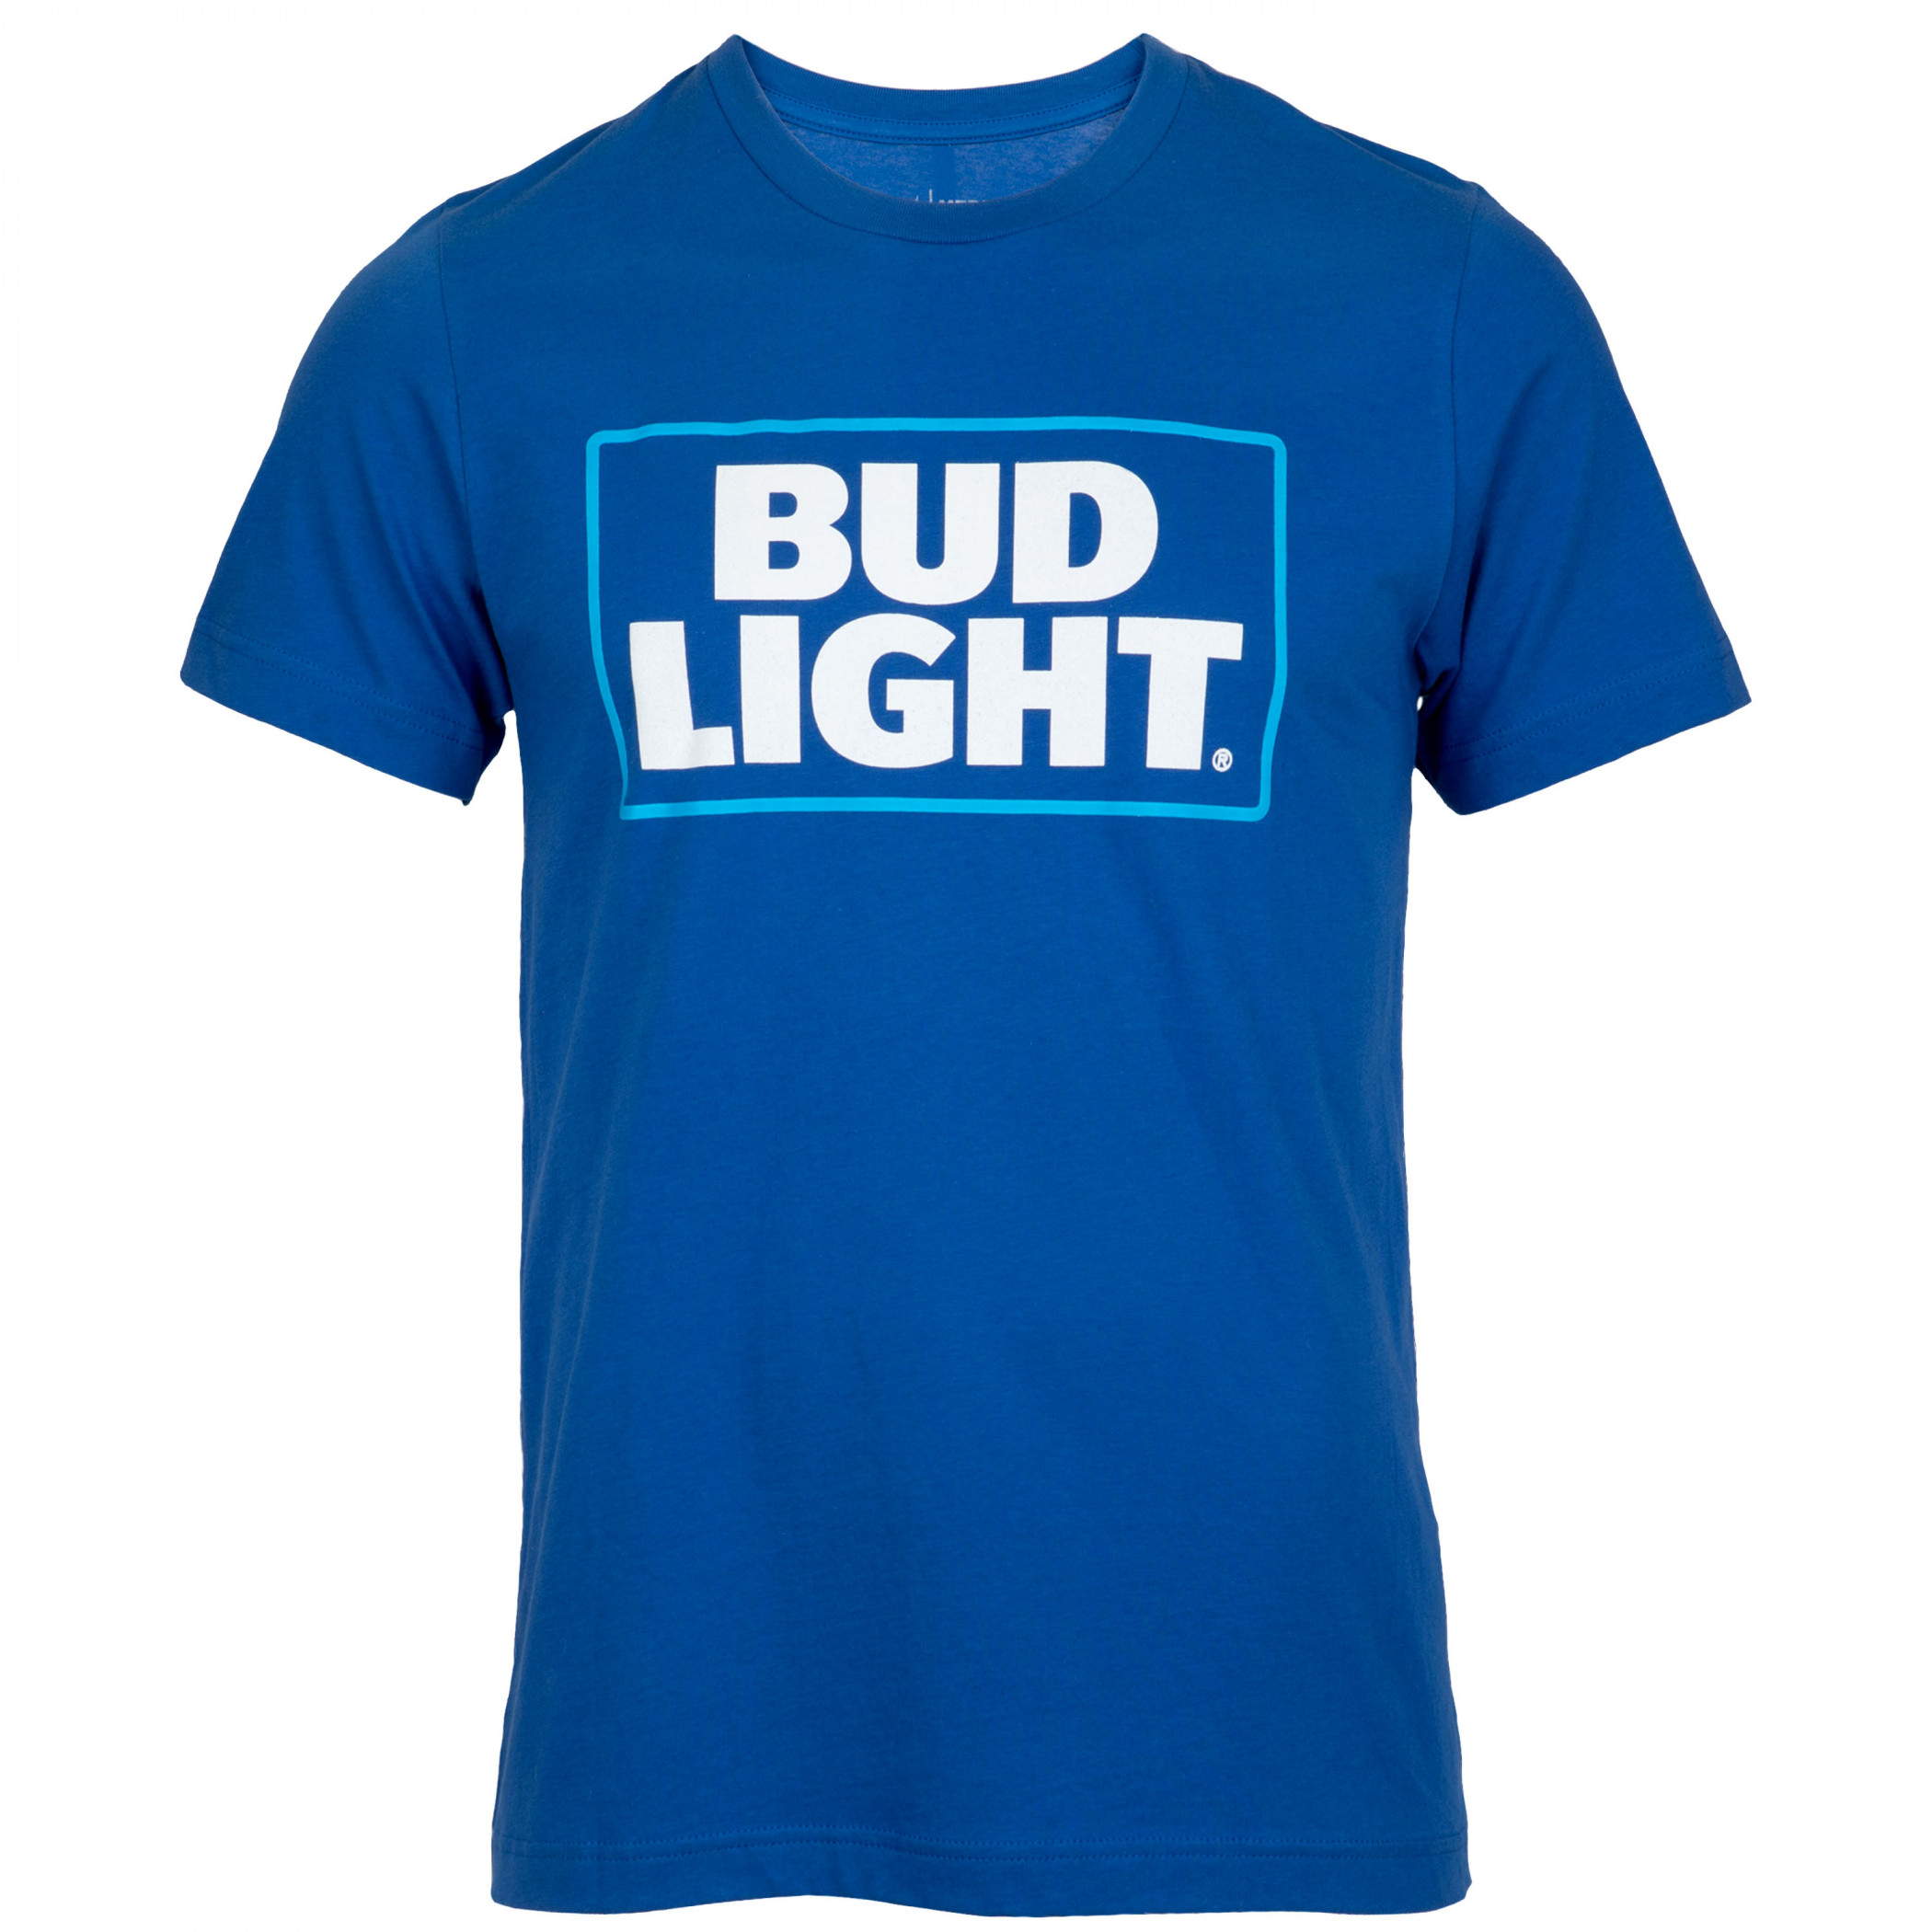 Bud Light New Logo Men's Royal Blue T-Shirt